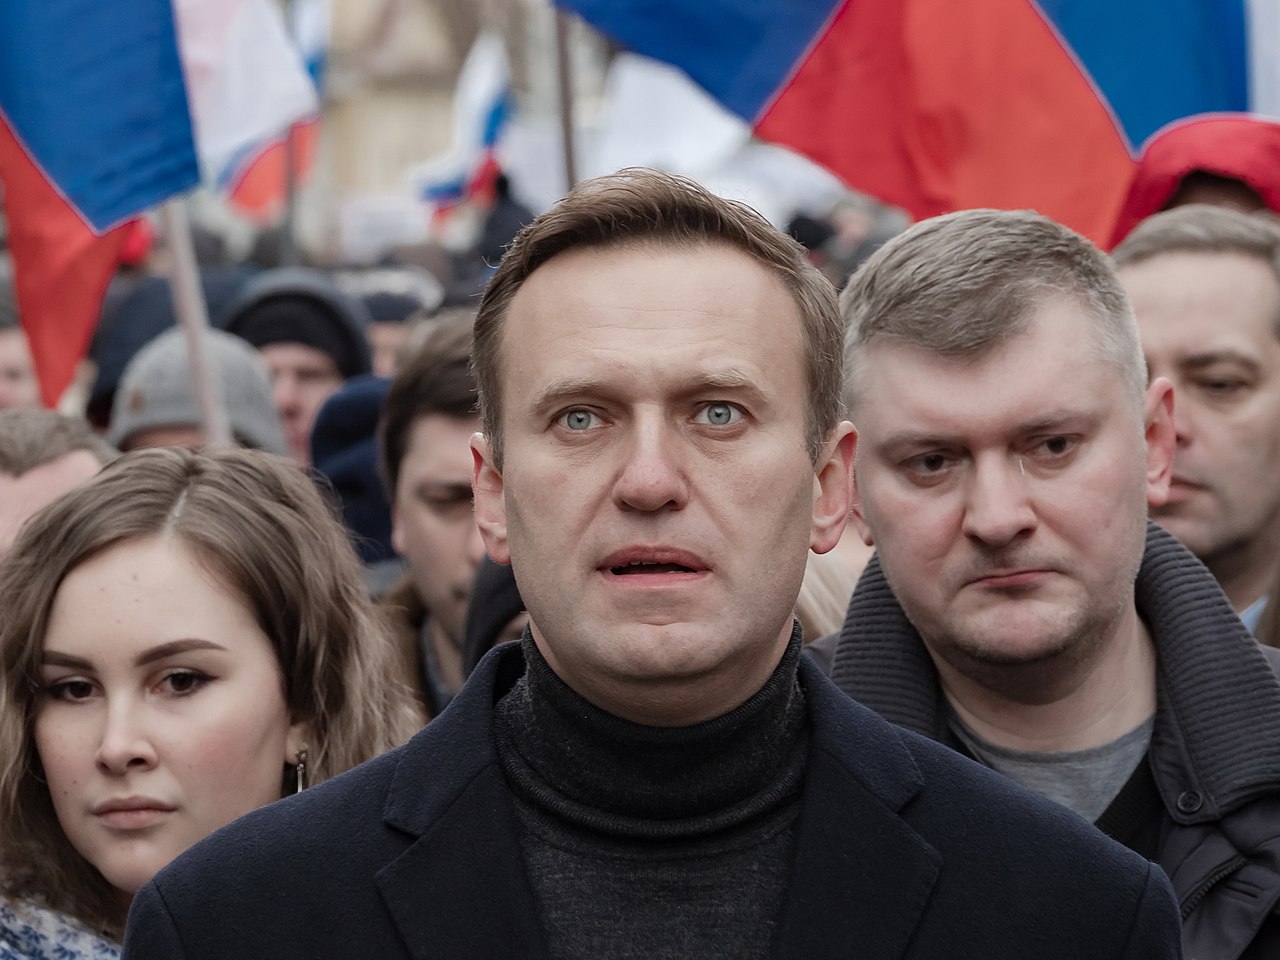 L'oppositore Alexei Navalny in marcia in memoria del politico Boris Nemtsov, ucciso in Russia.